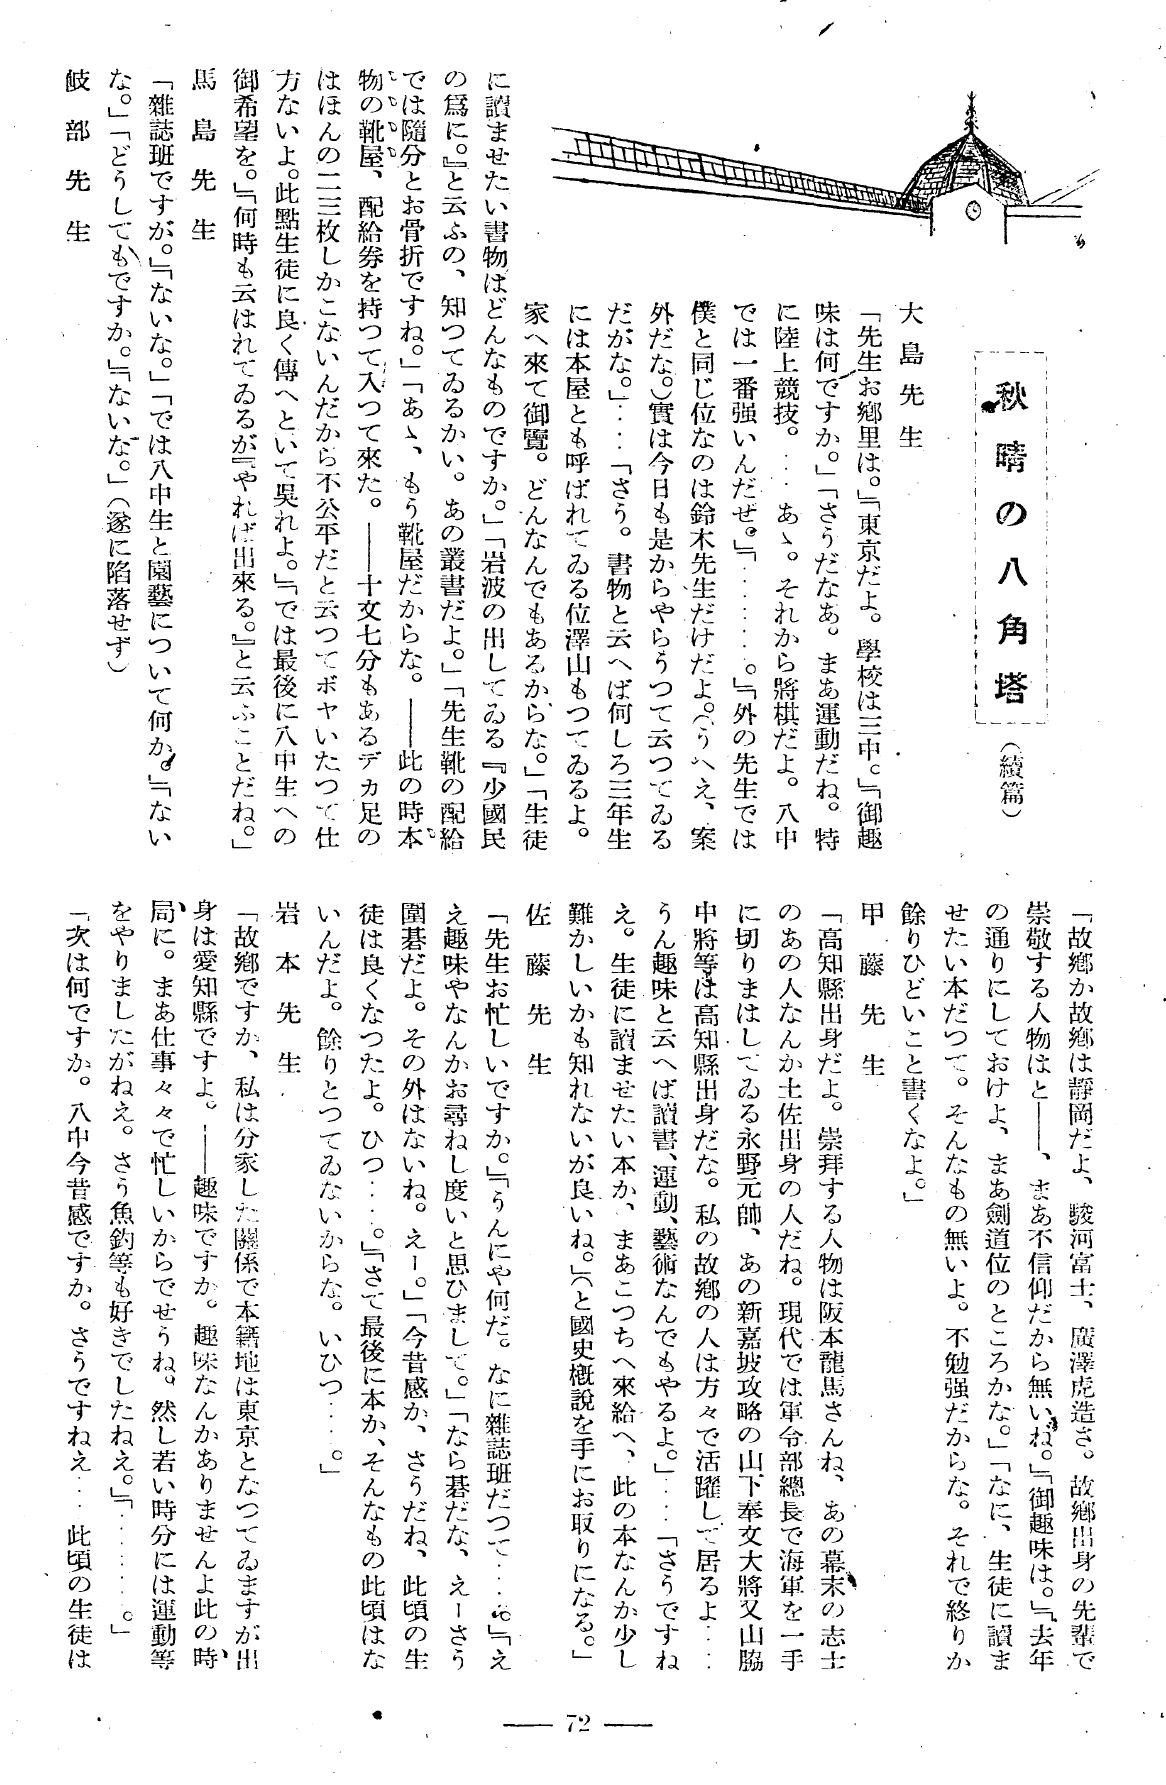 報國団雑誌 第20号 151 ぶら下がり取材 秋晴れの八角塔01.jpg